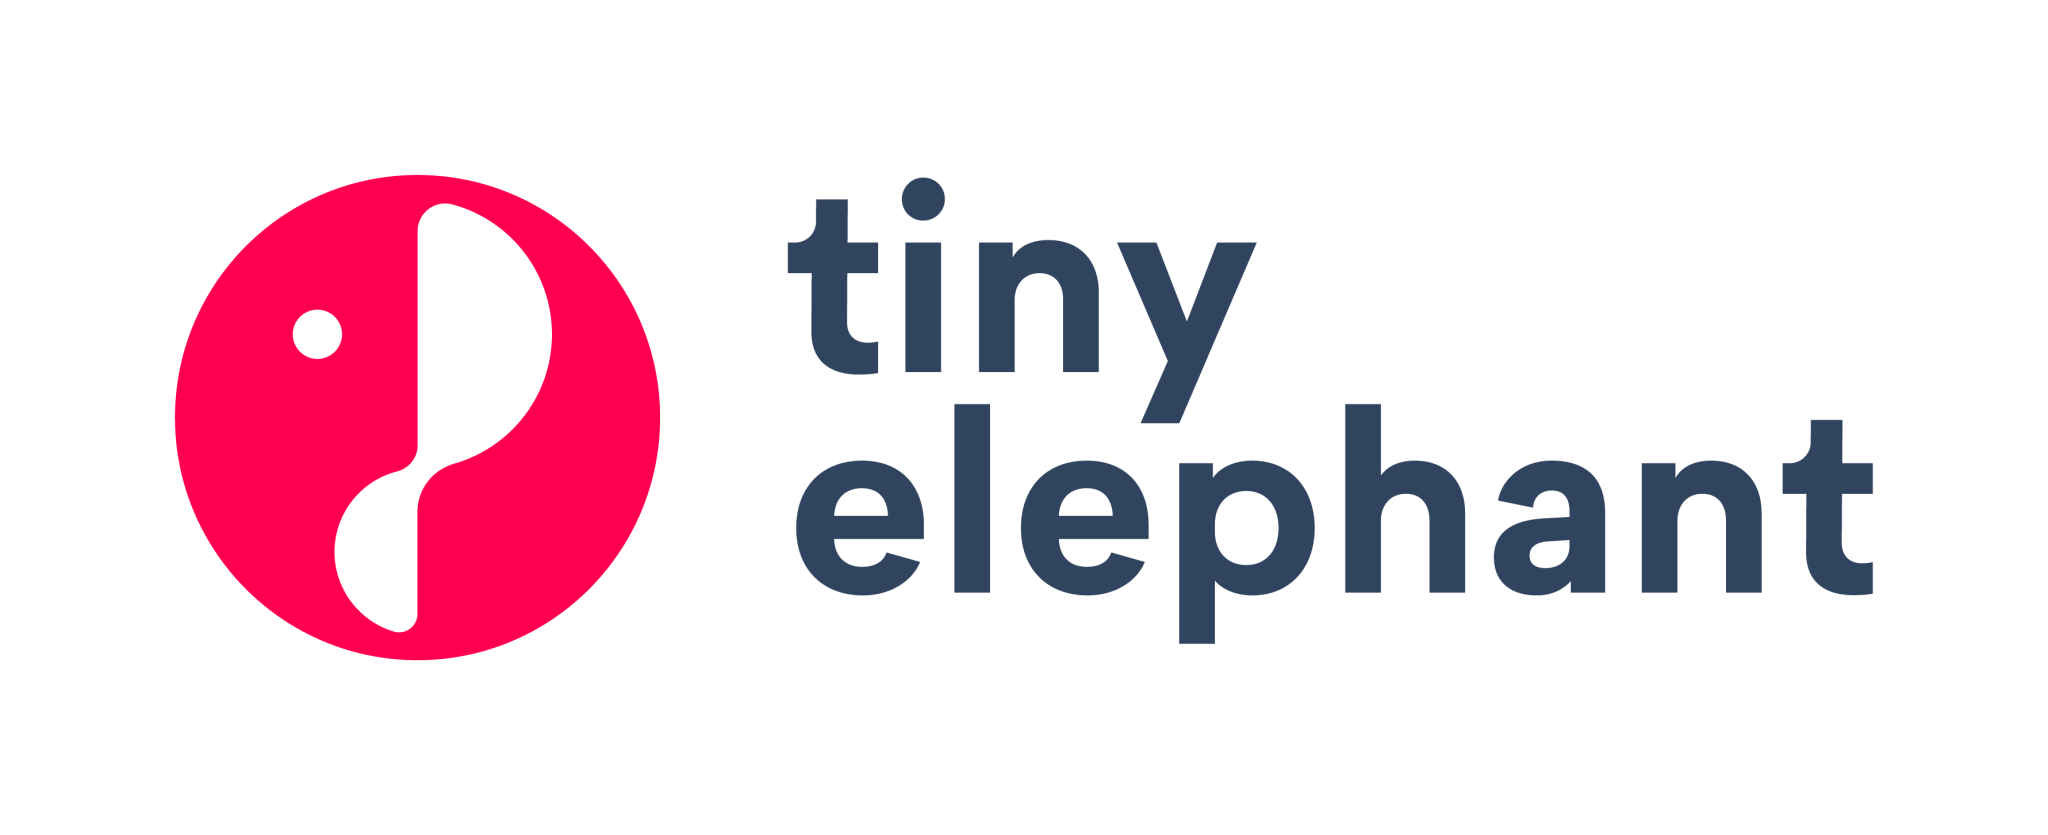 Tiny epephant logo